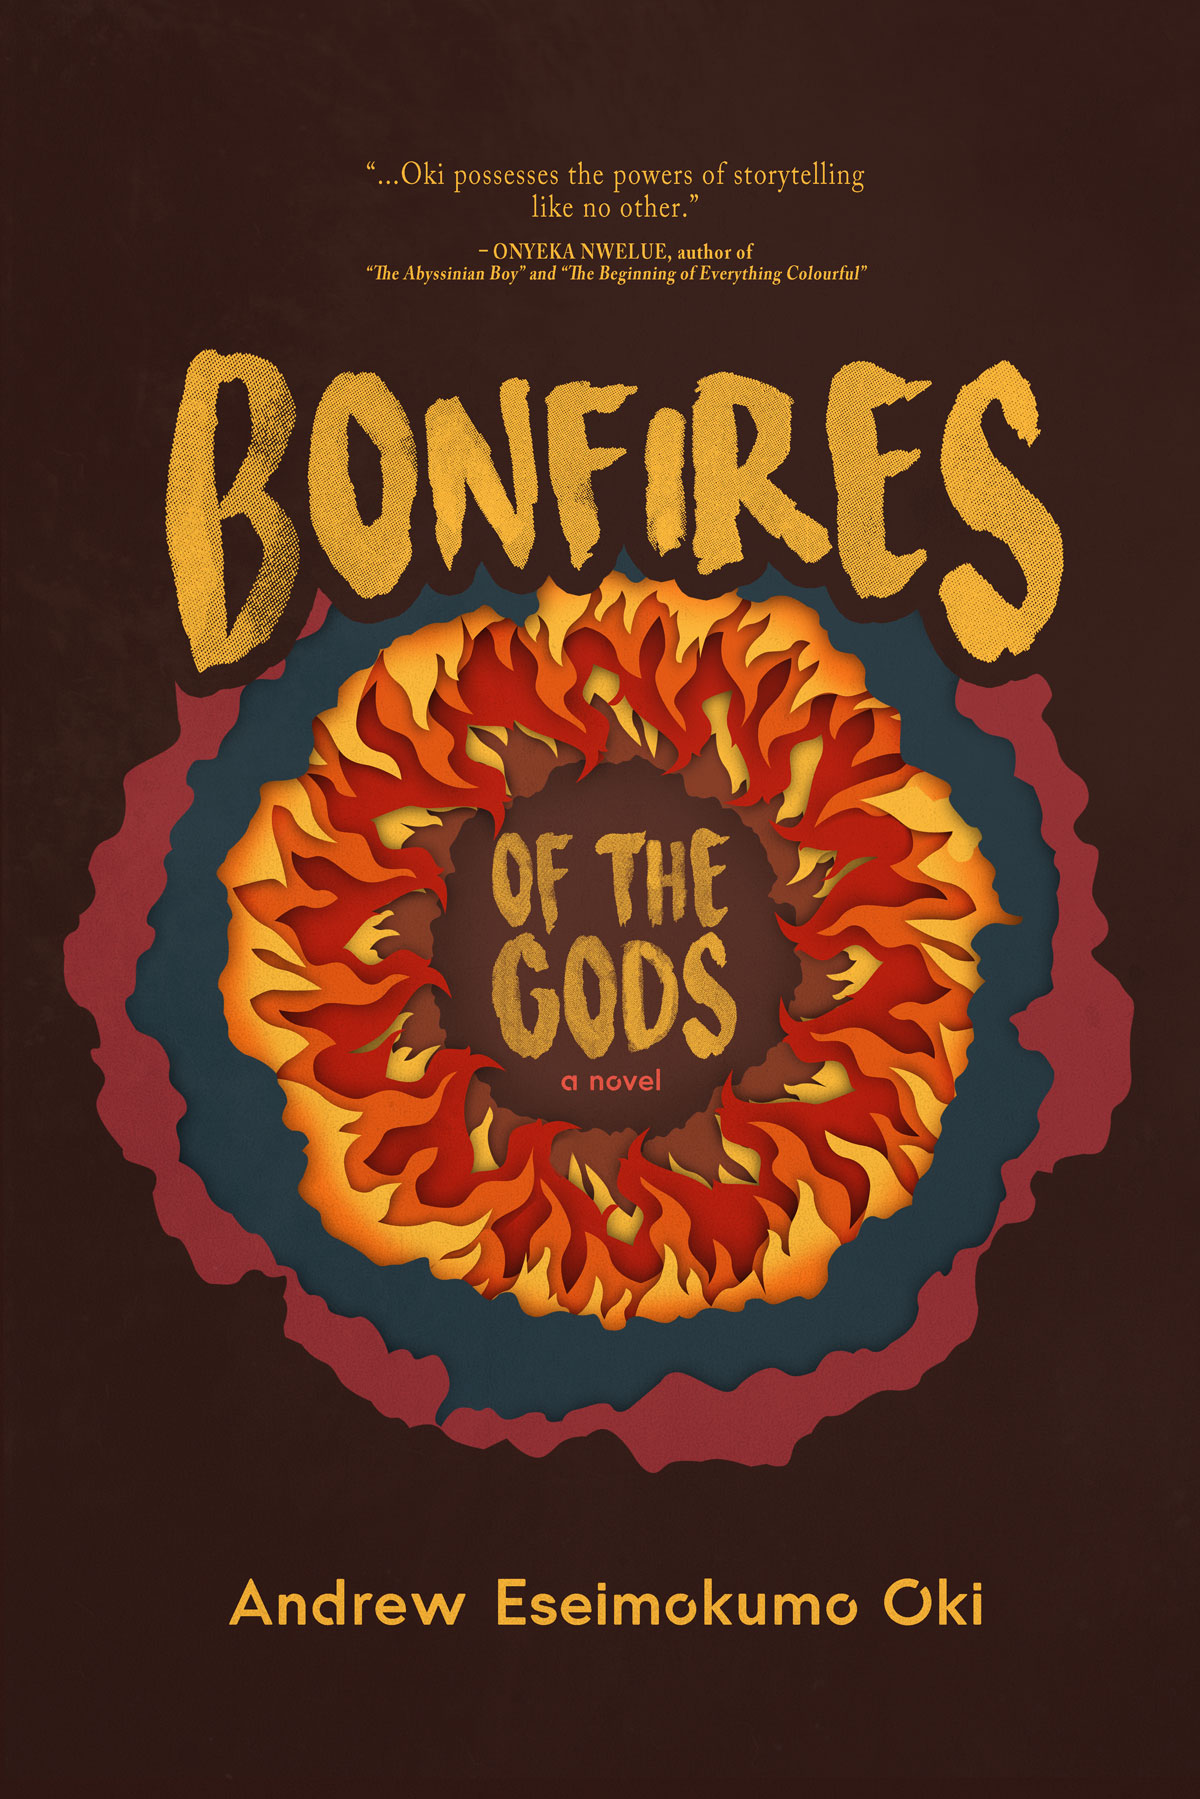 Bonfires of the Gods